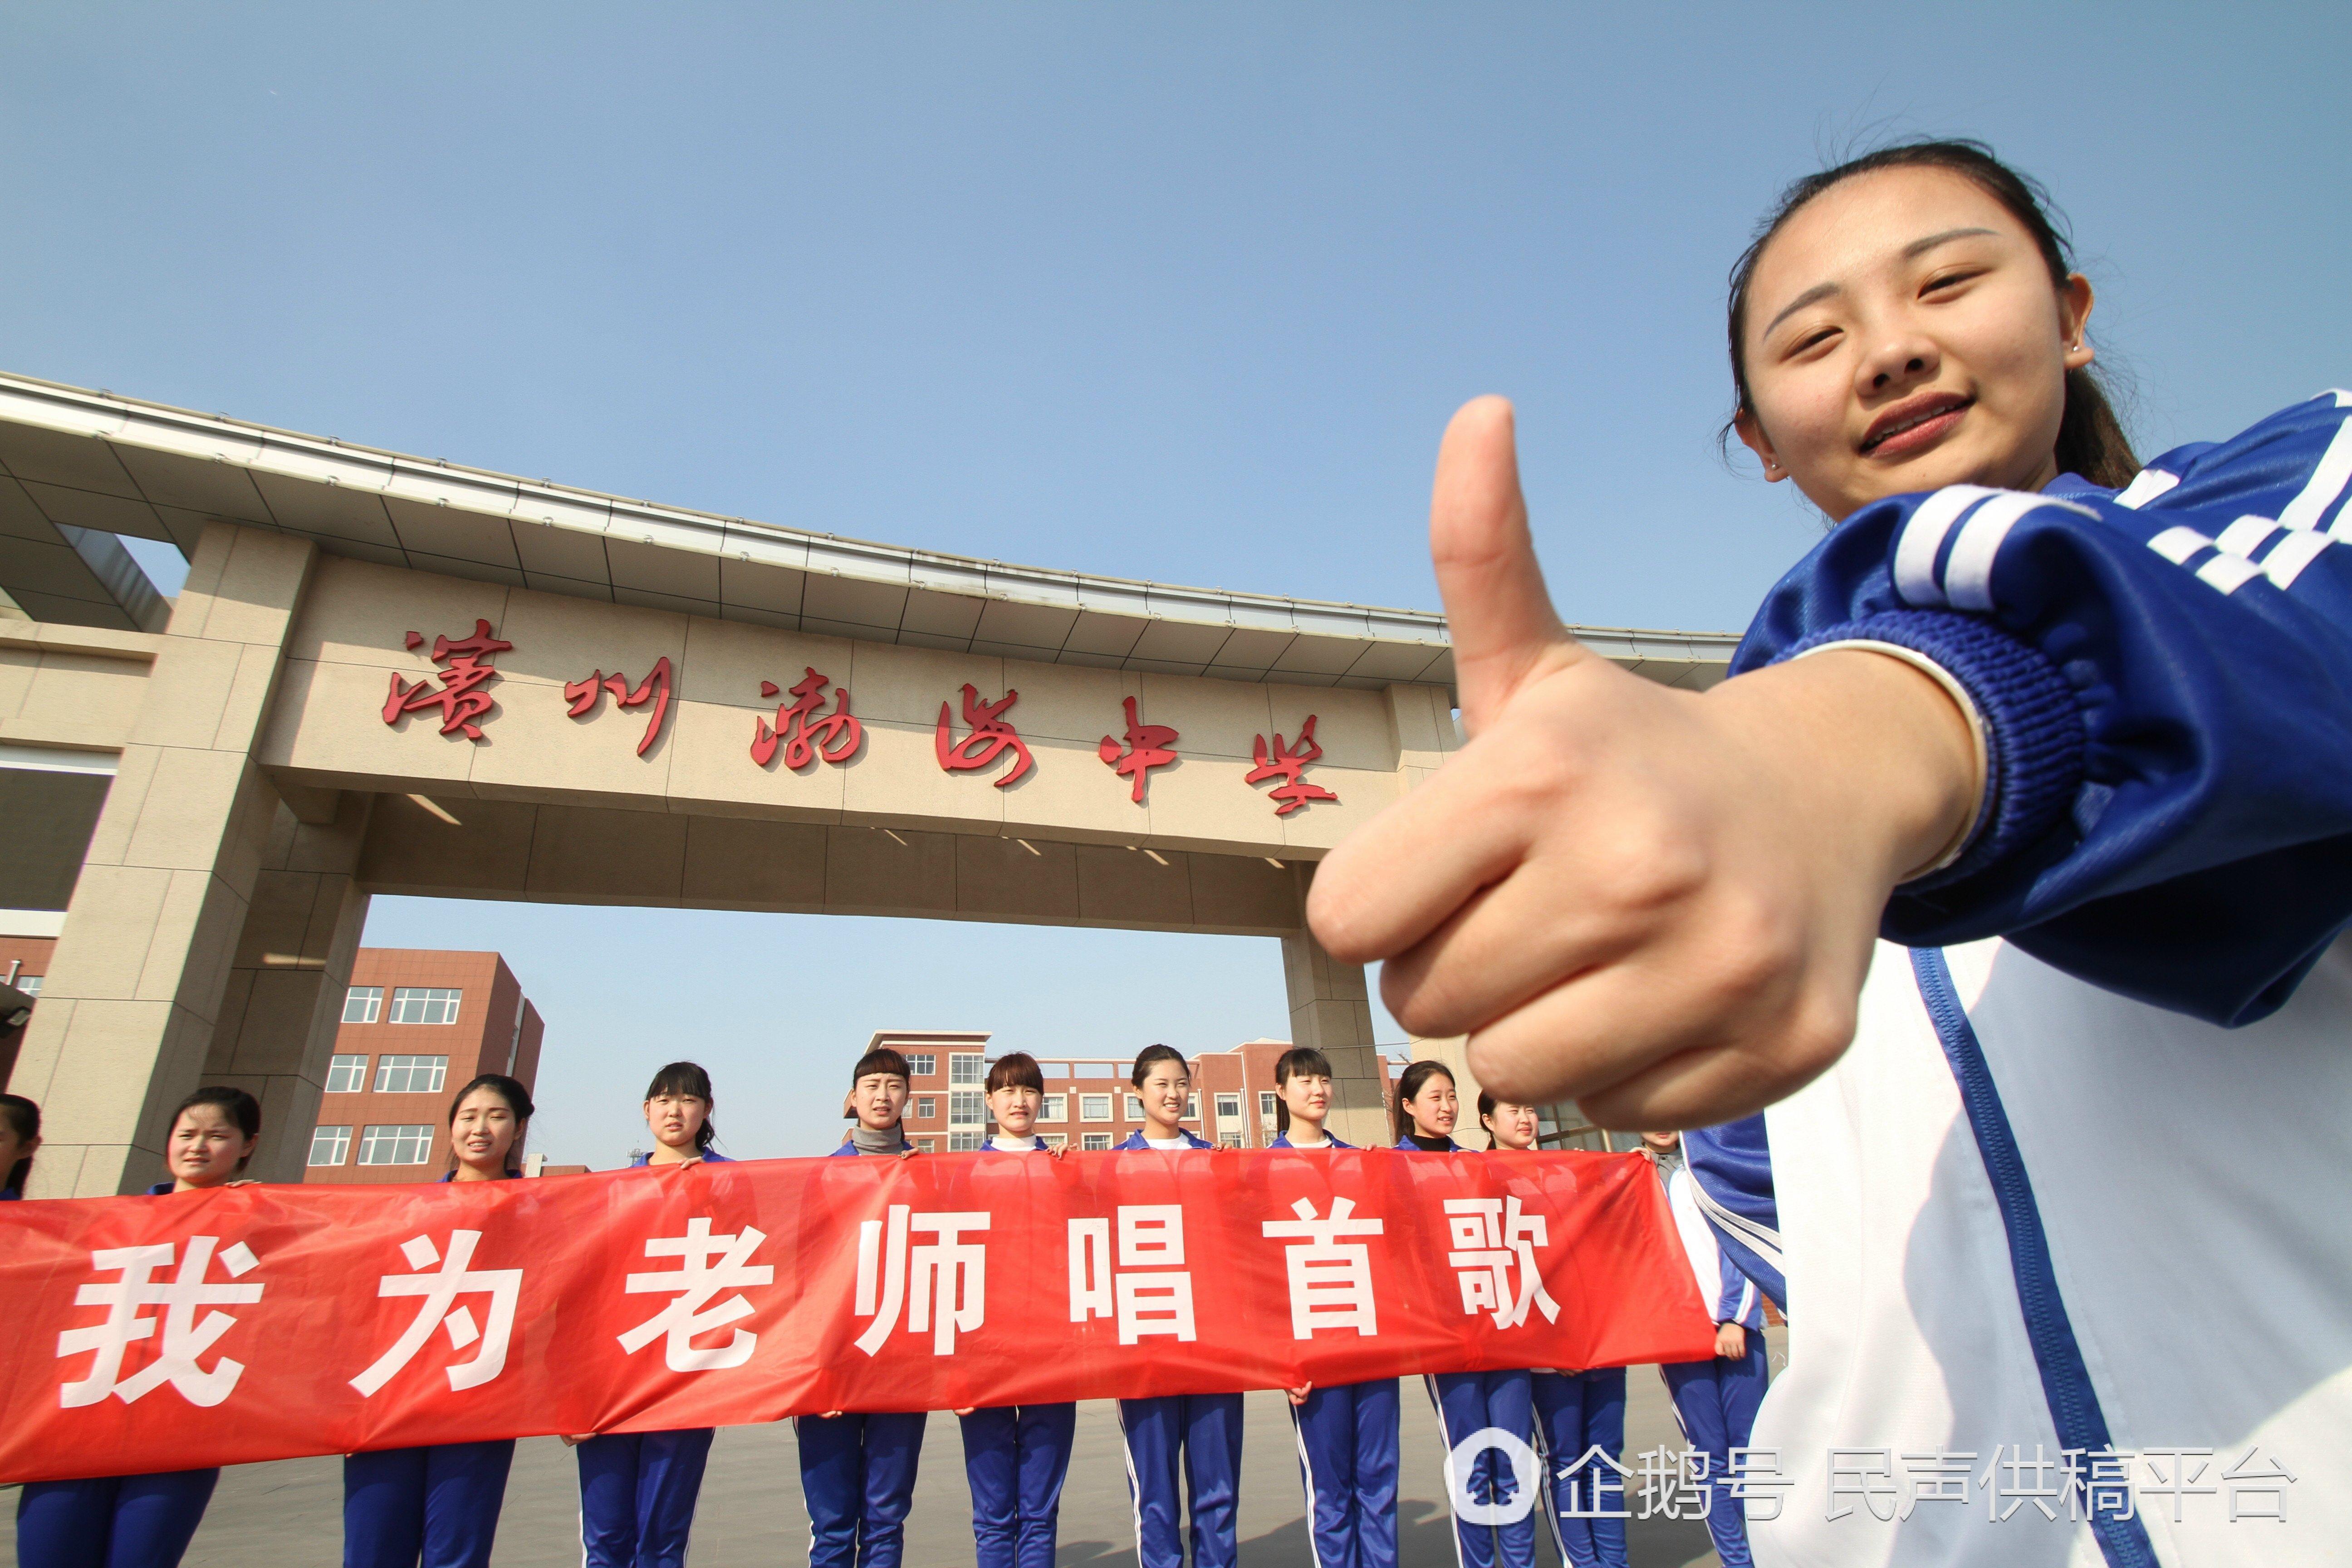 2017年4月1日,山东滨州渤海中学举行科技创新教育联合基地揭牌仪式